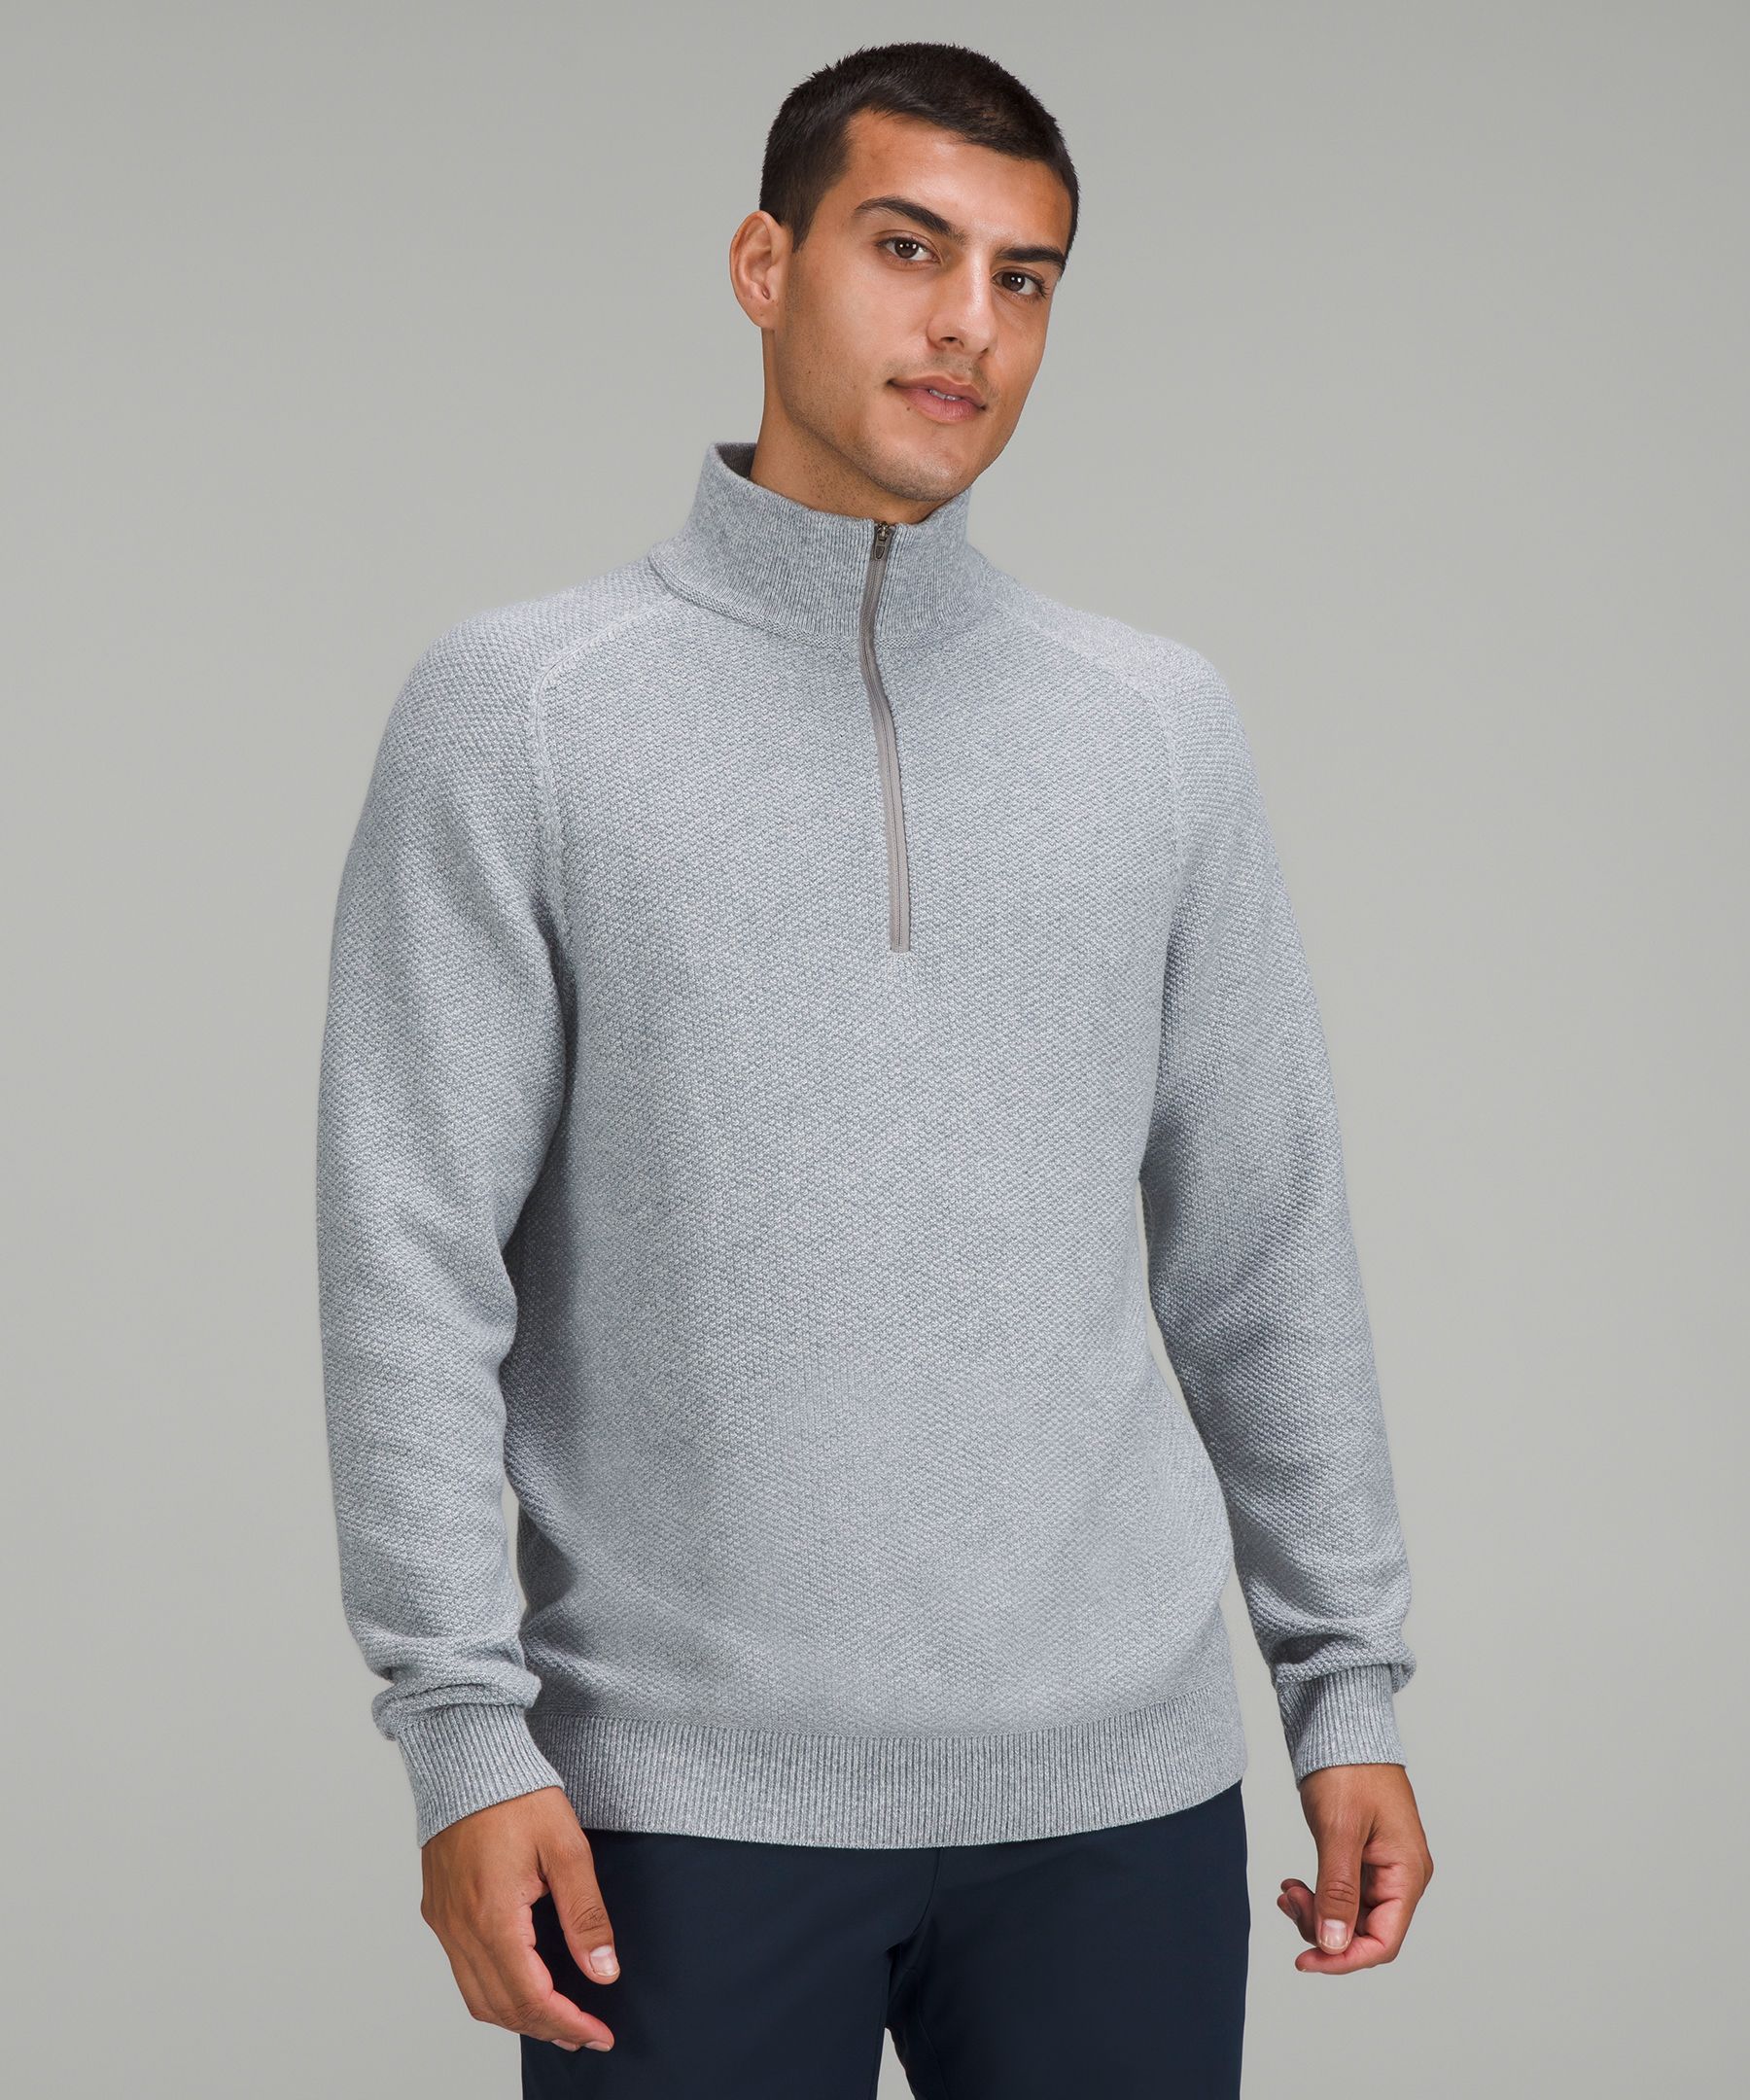 Textured Knit Half-Zip Sweater, Men's Hoodies & Sweatshirts